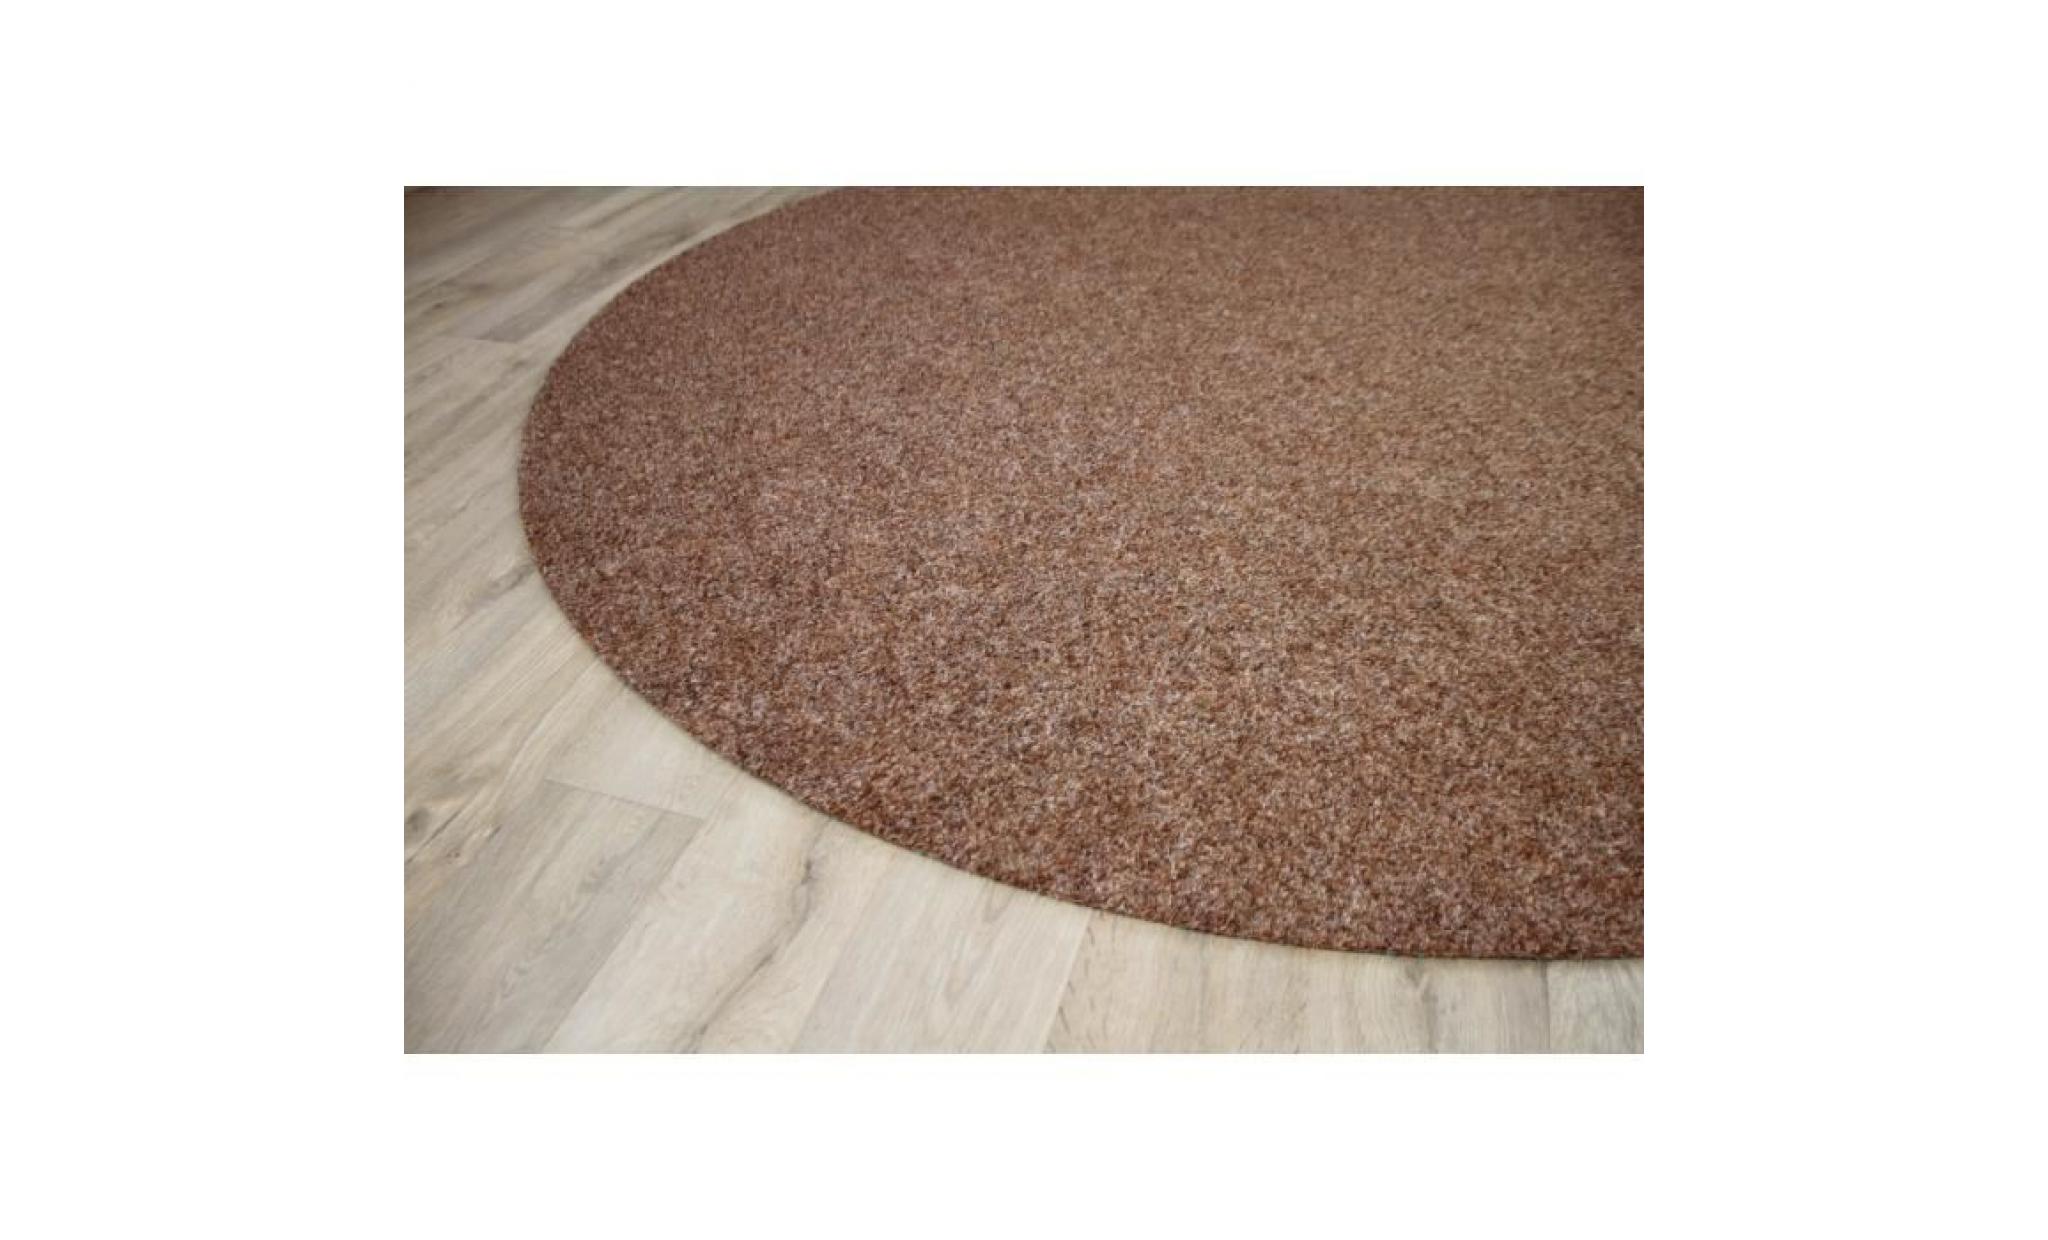 kingston   tapis type gazon artificiel rond – pour jardin, terrasse, balcon   brun   13 tailles disponibles [133 cm rond] pas cher